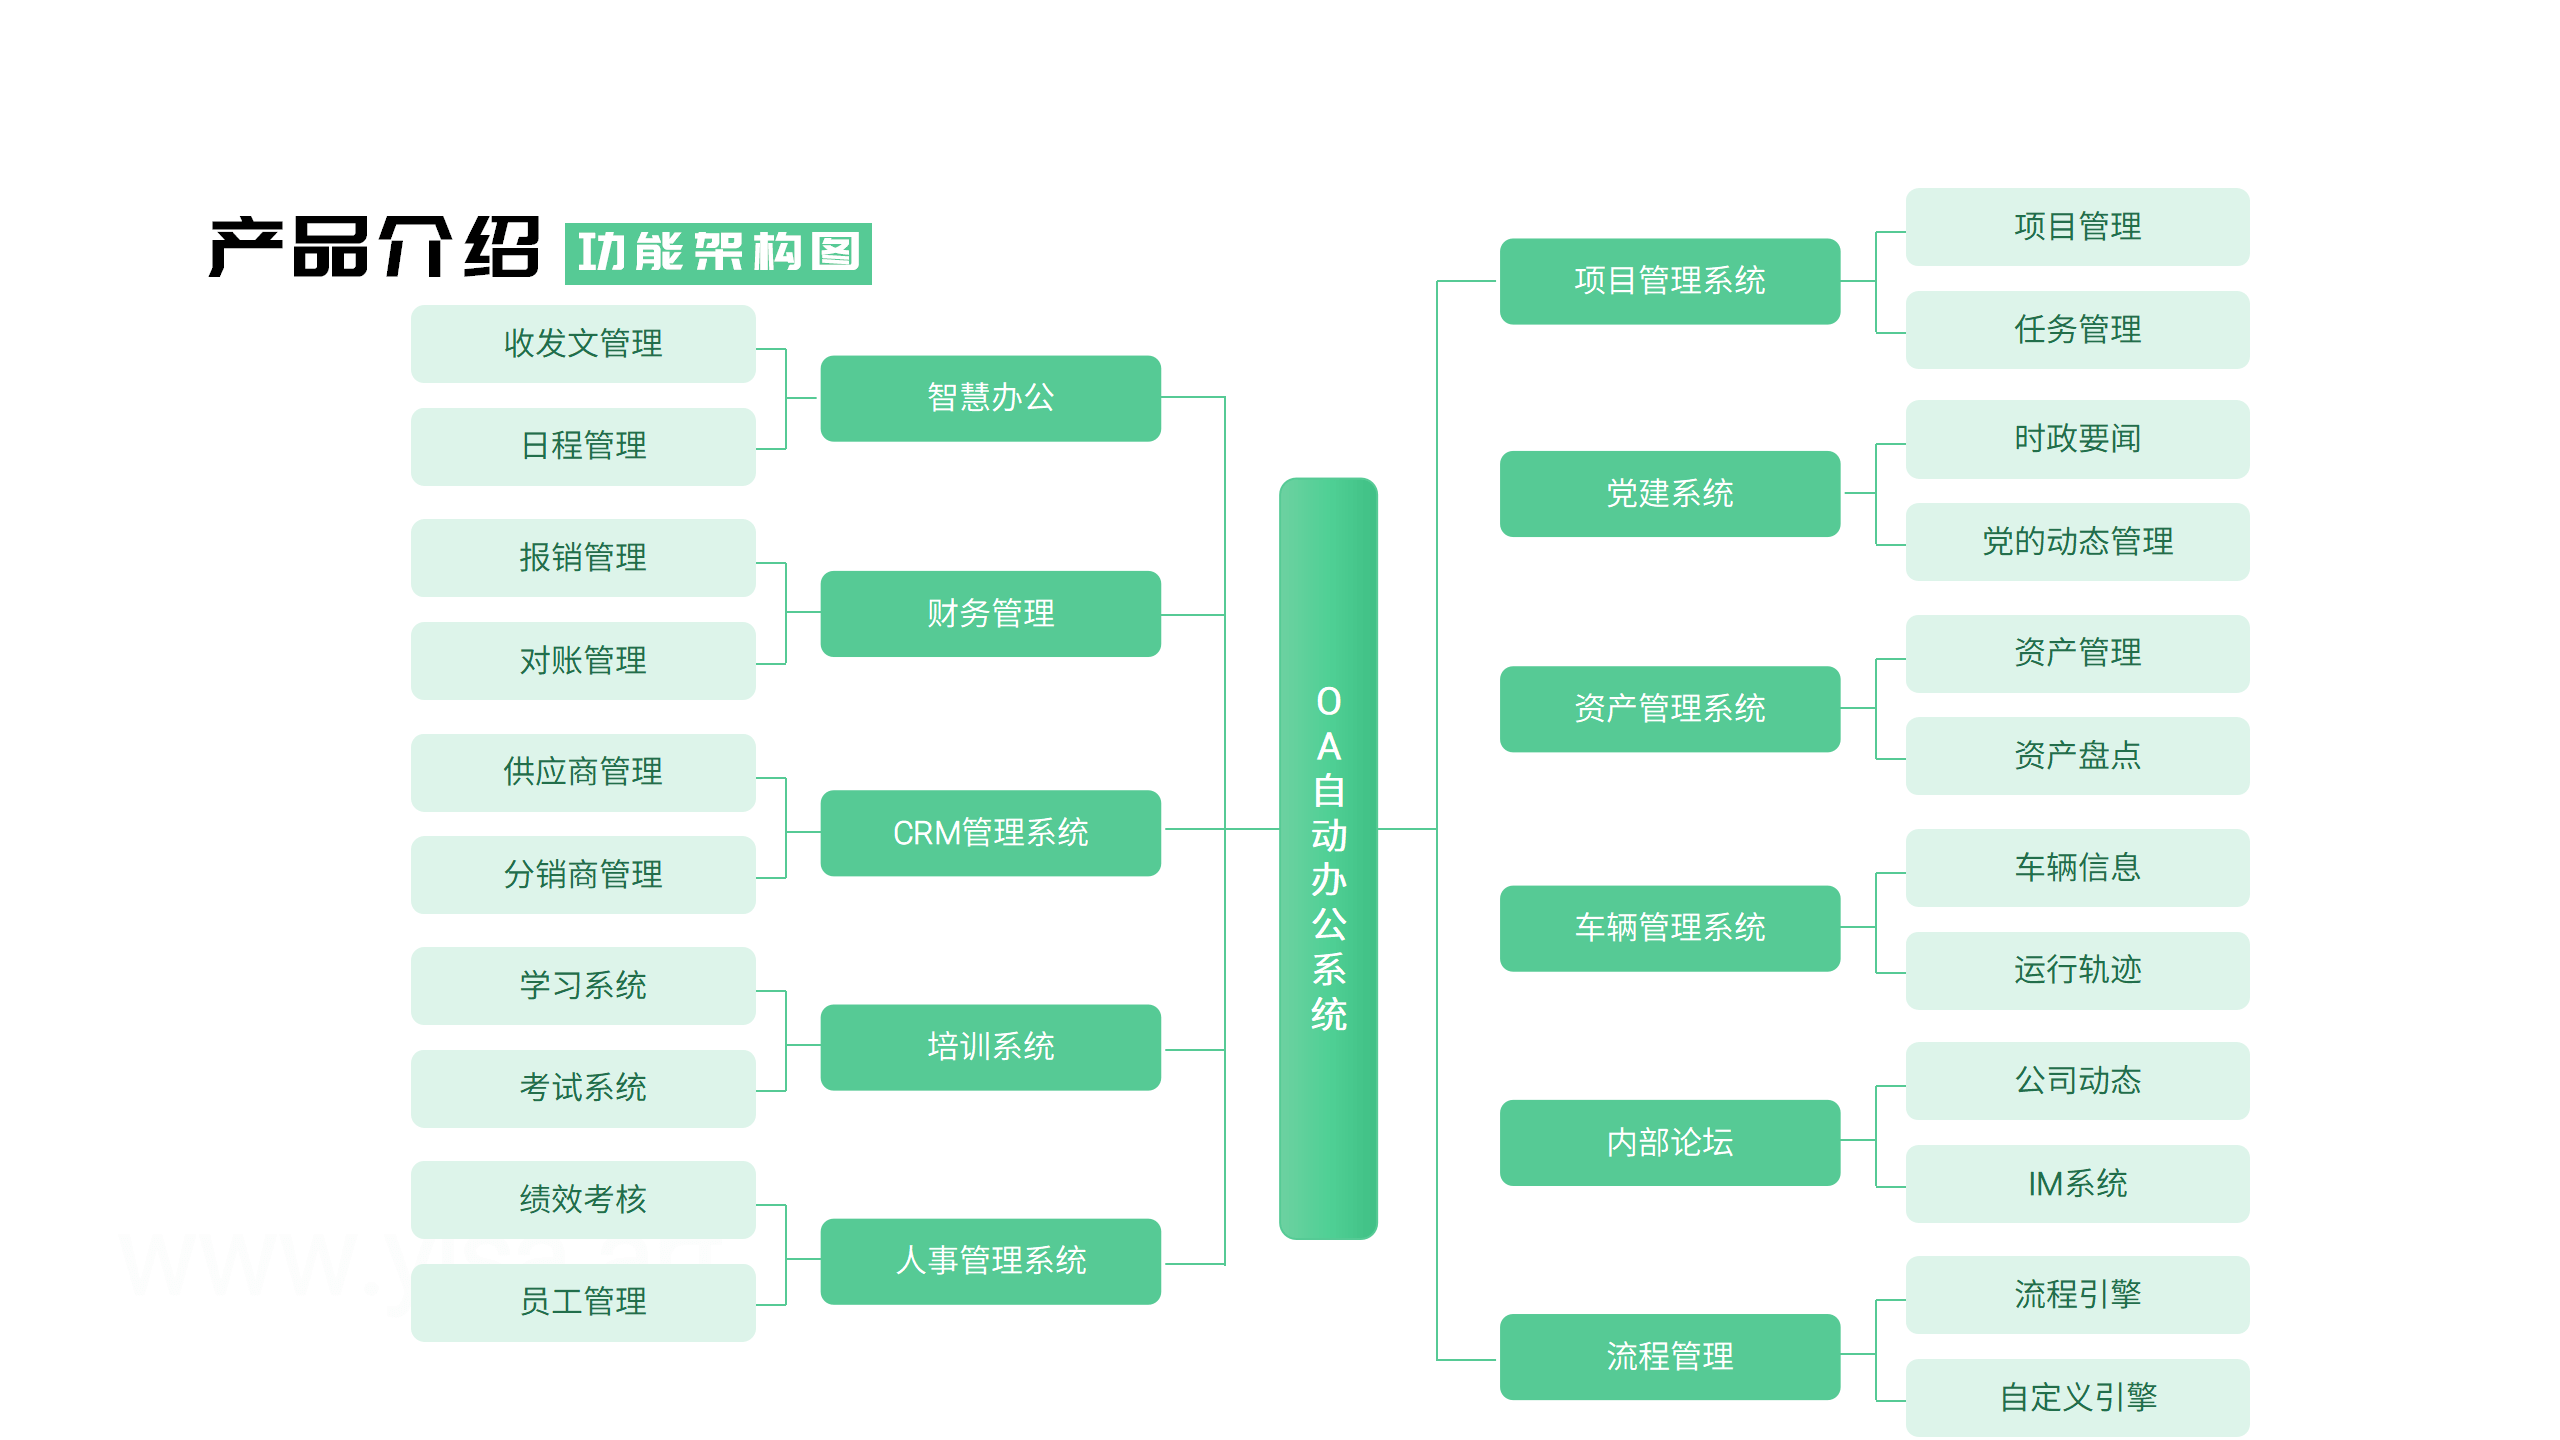 OA自动办公系统 黄伟 V2.3 -20230320_10